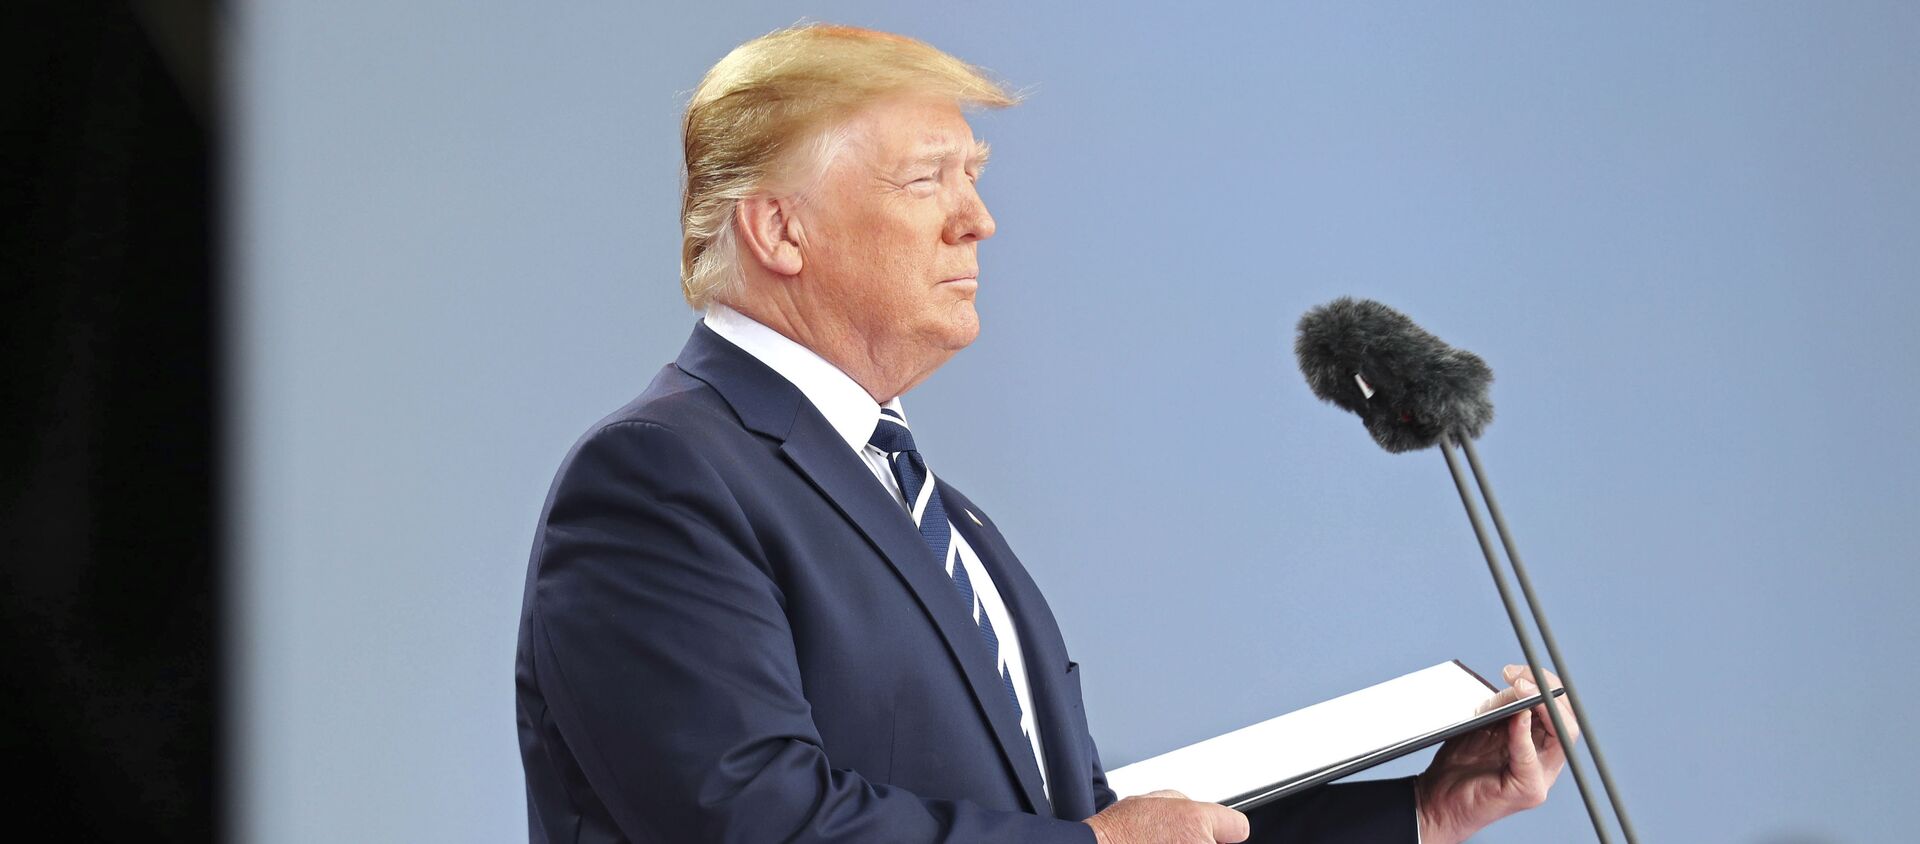 Президент США Дональд Трамп - Sputnik Латвия, 1920, 29.08.2019